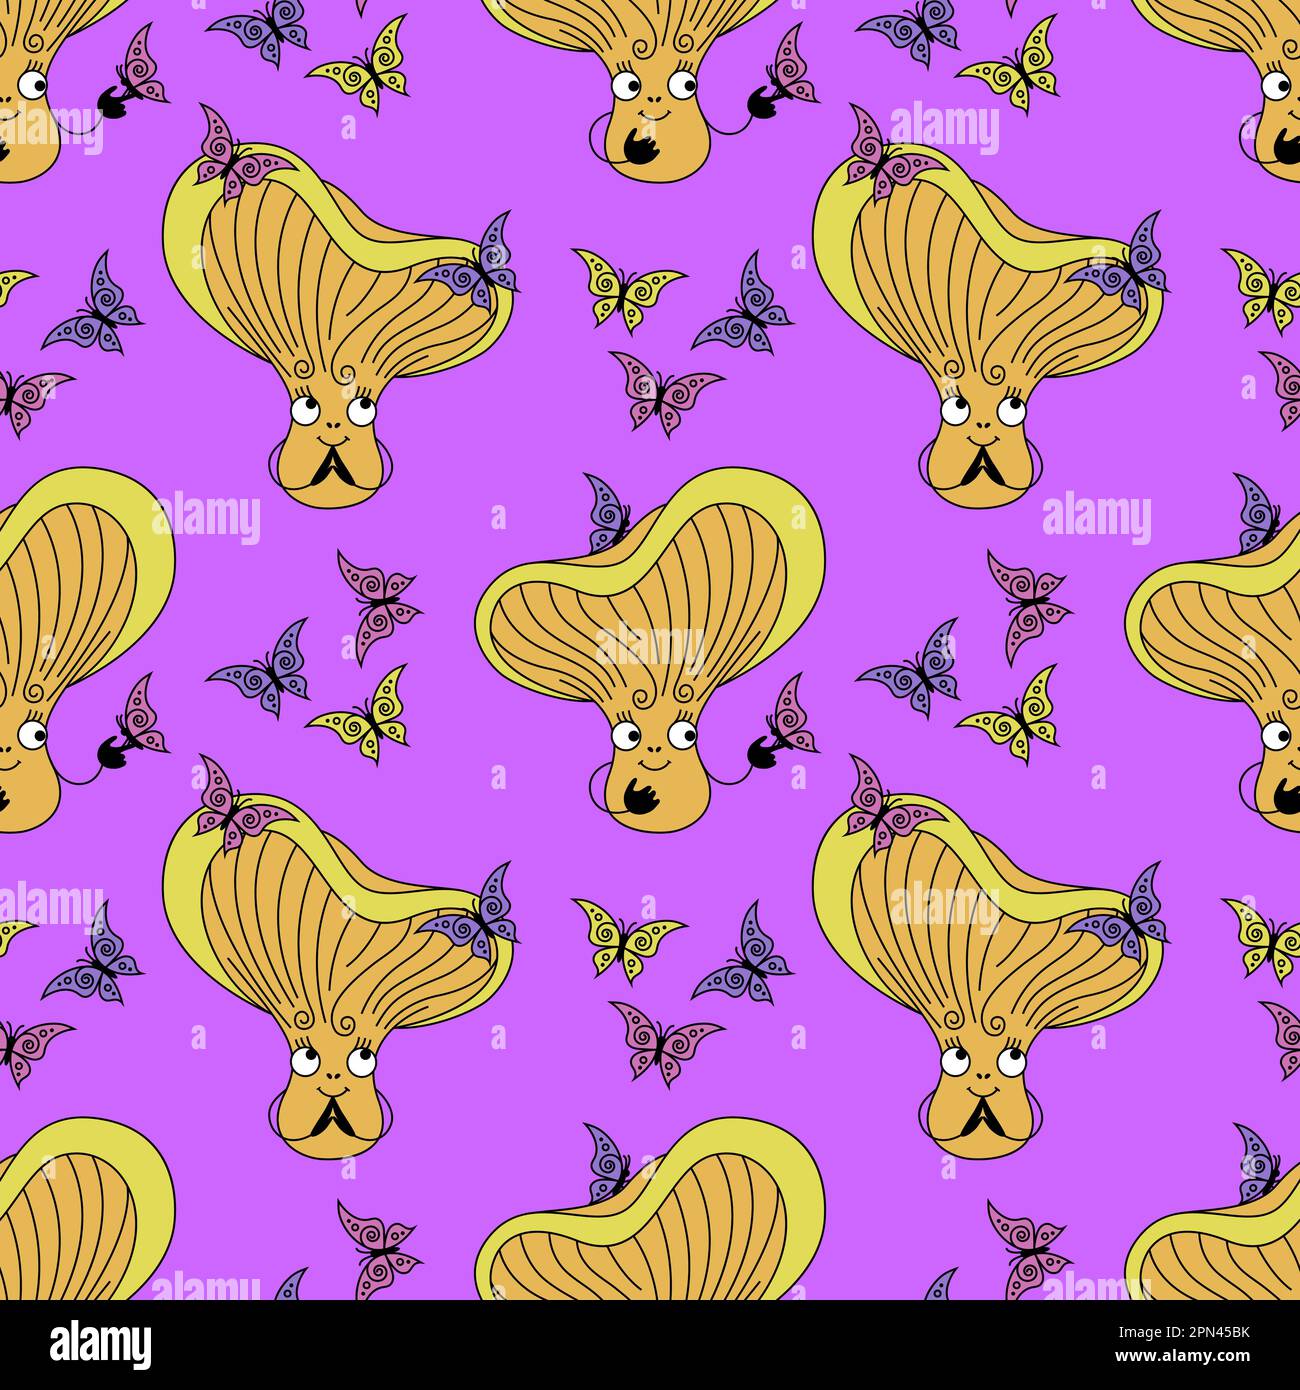 Süßes Pfifferling-Pilz-Muster. Violetter Hintergrund mit fröhlichem Pilz und Schmetterlingen im flachen Retro-Stil. Stock Vektor